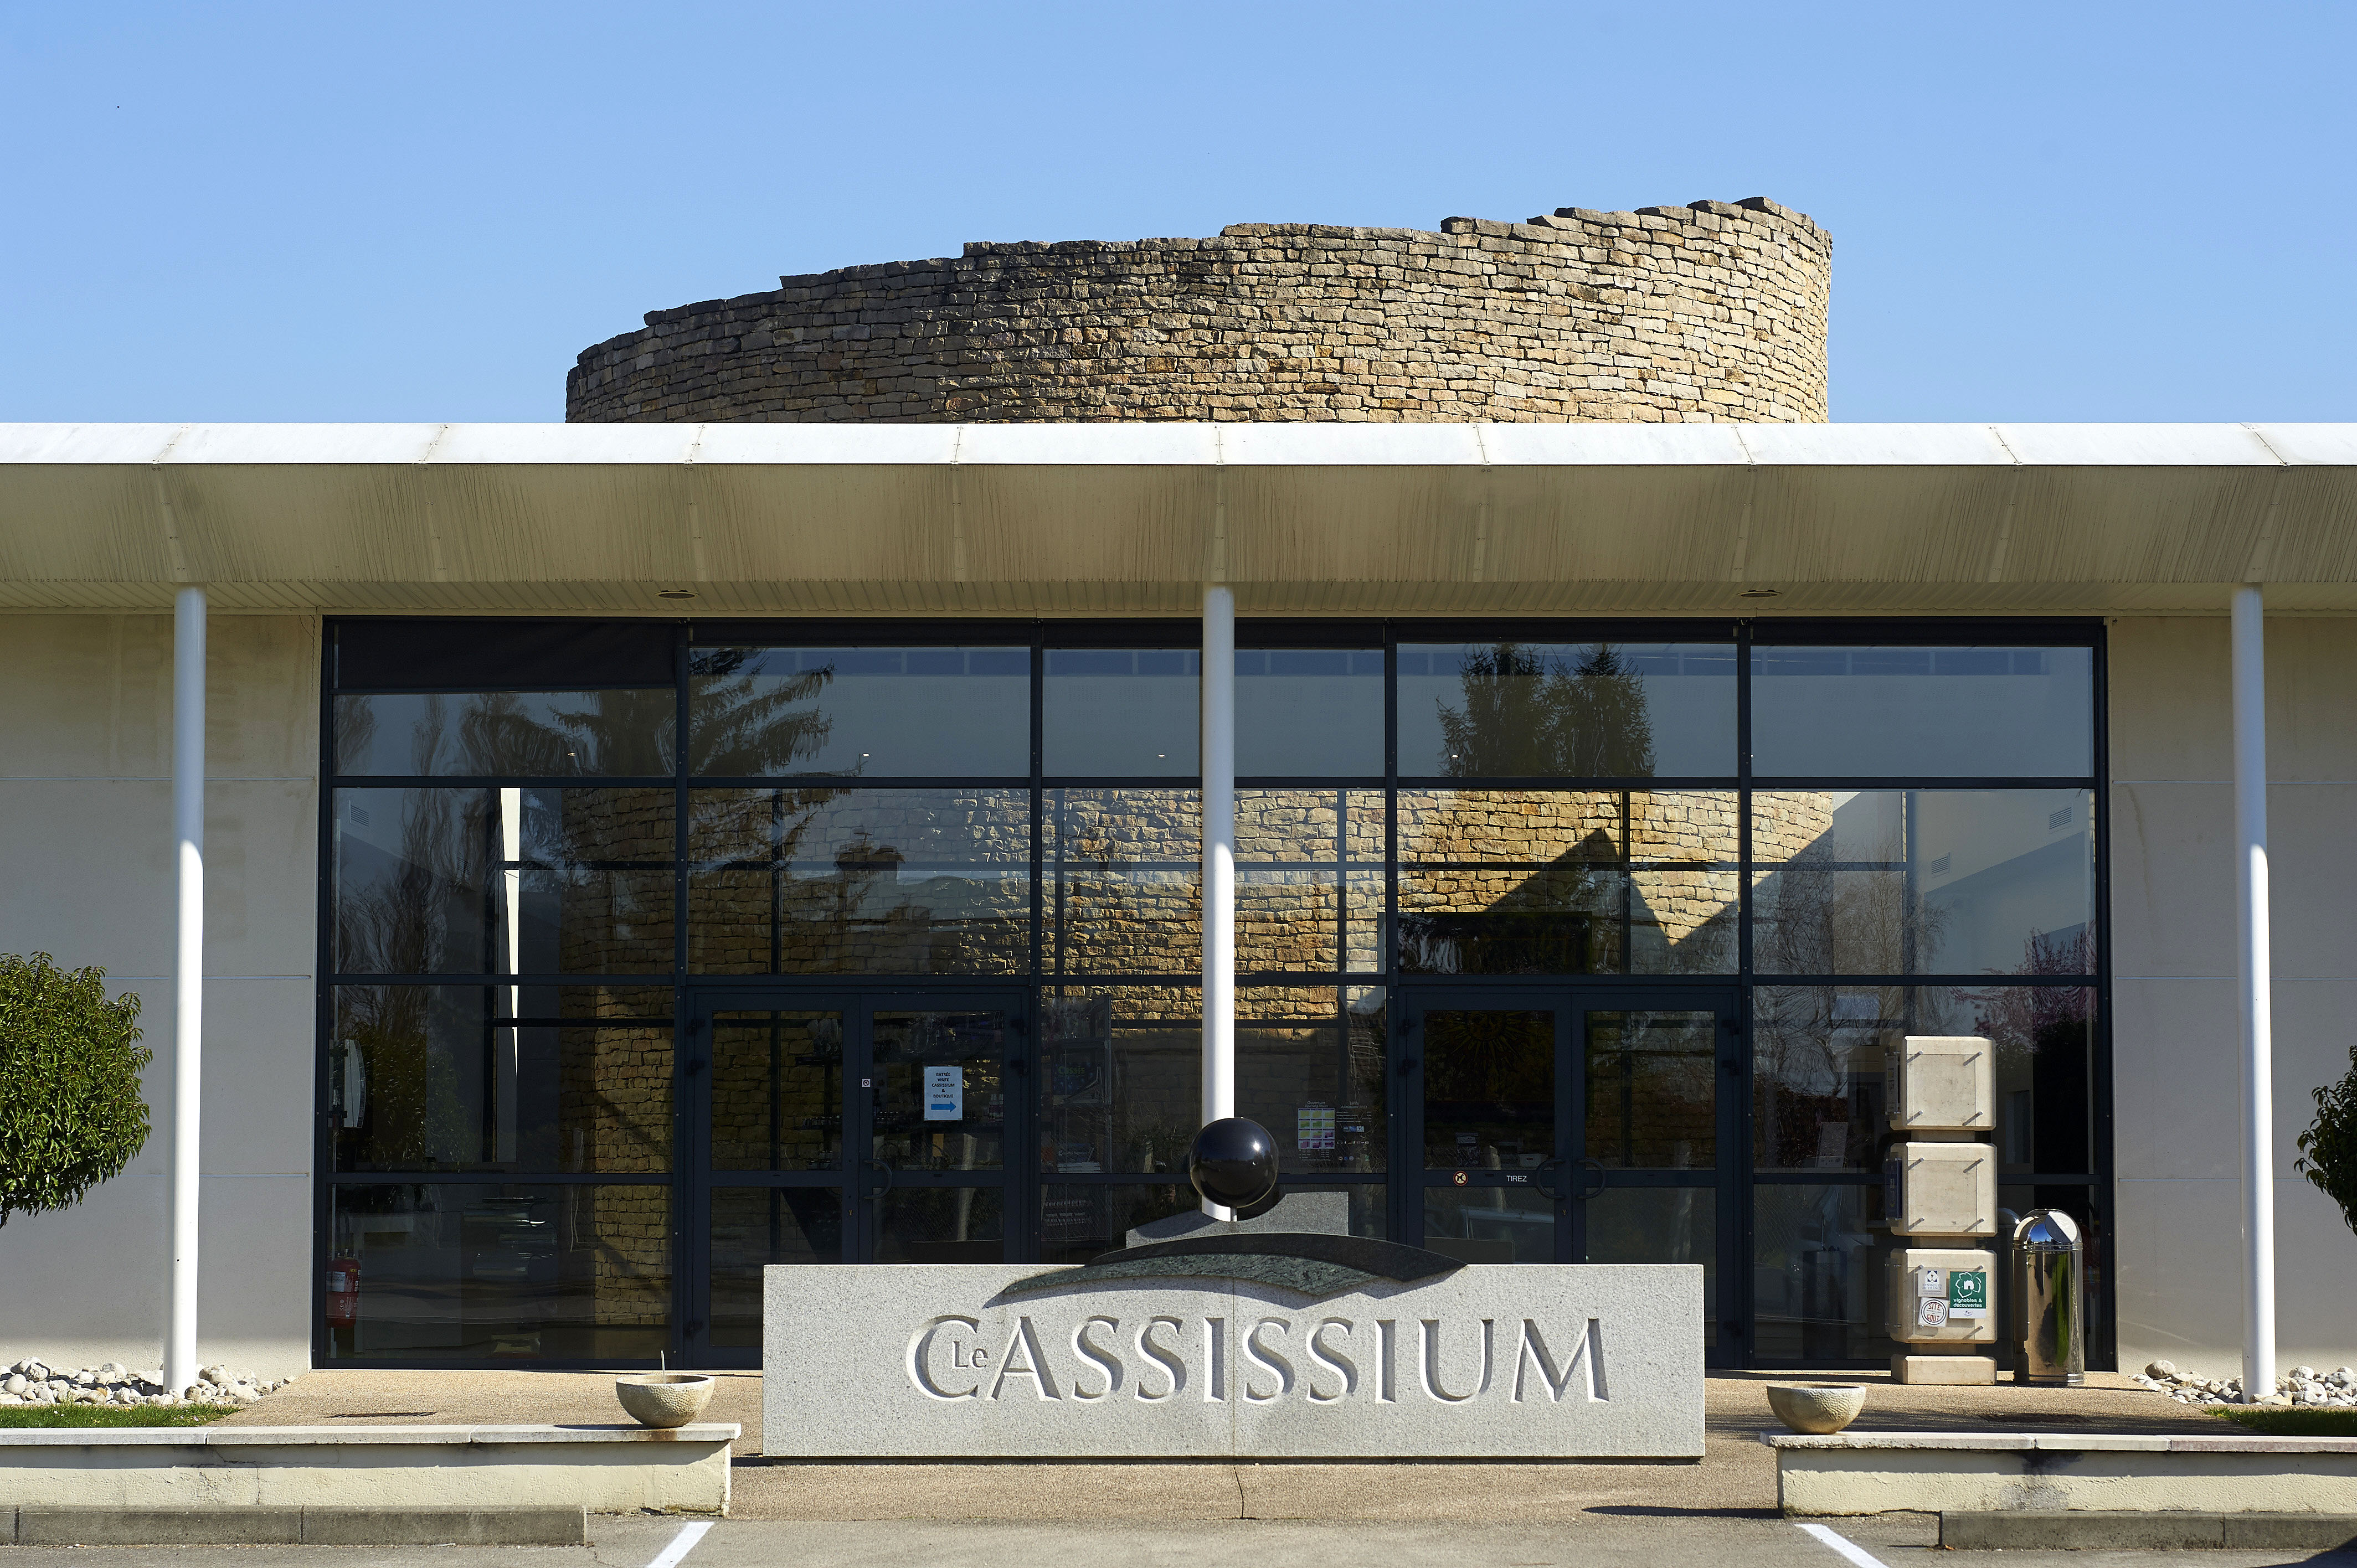 Visite le Cassissium